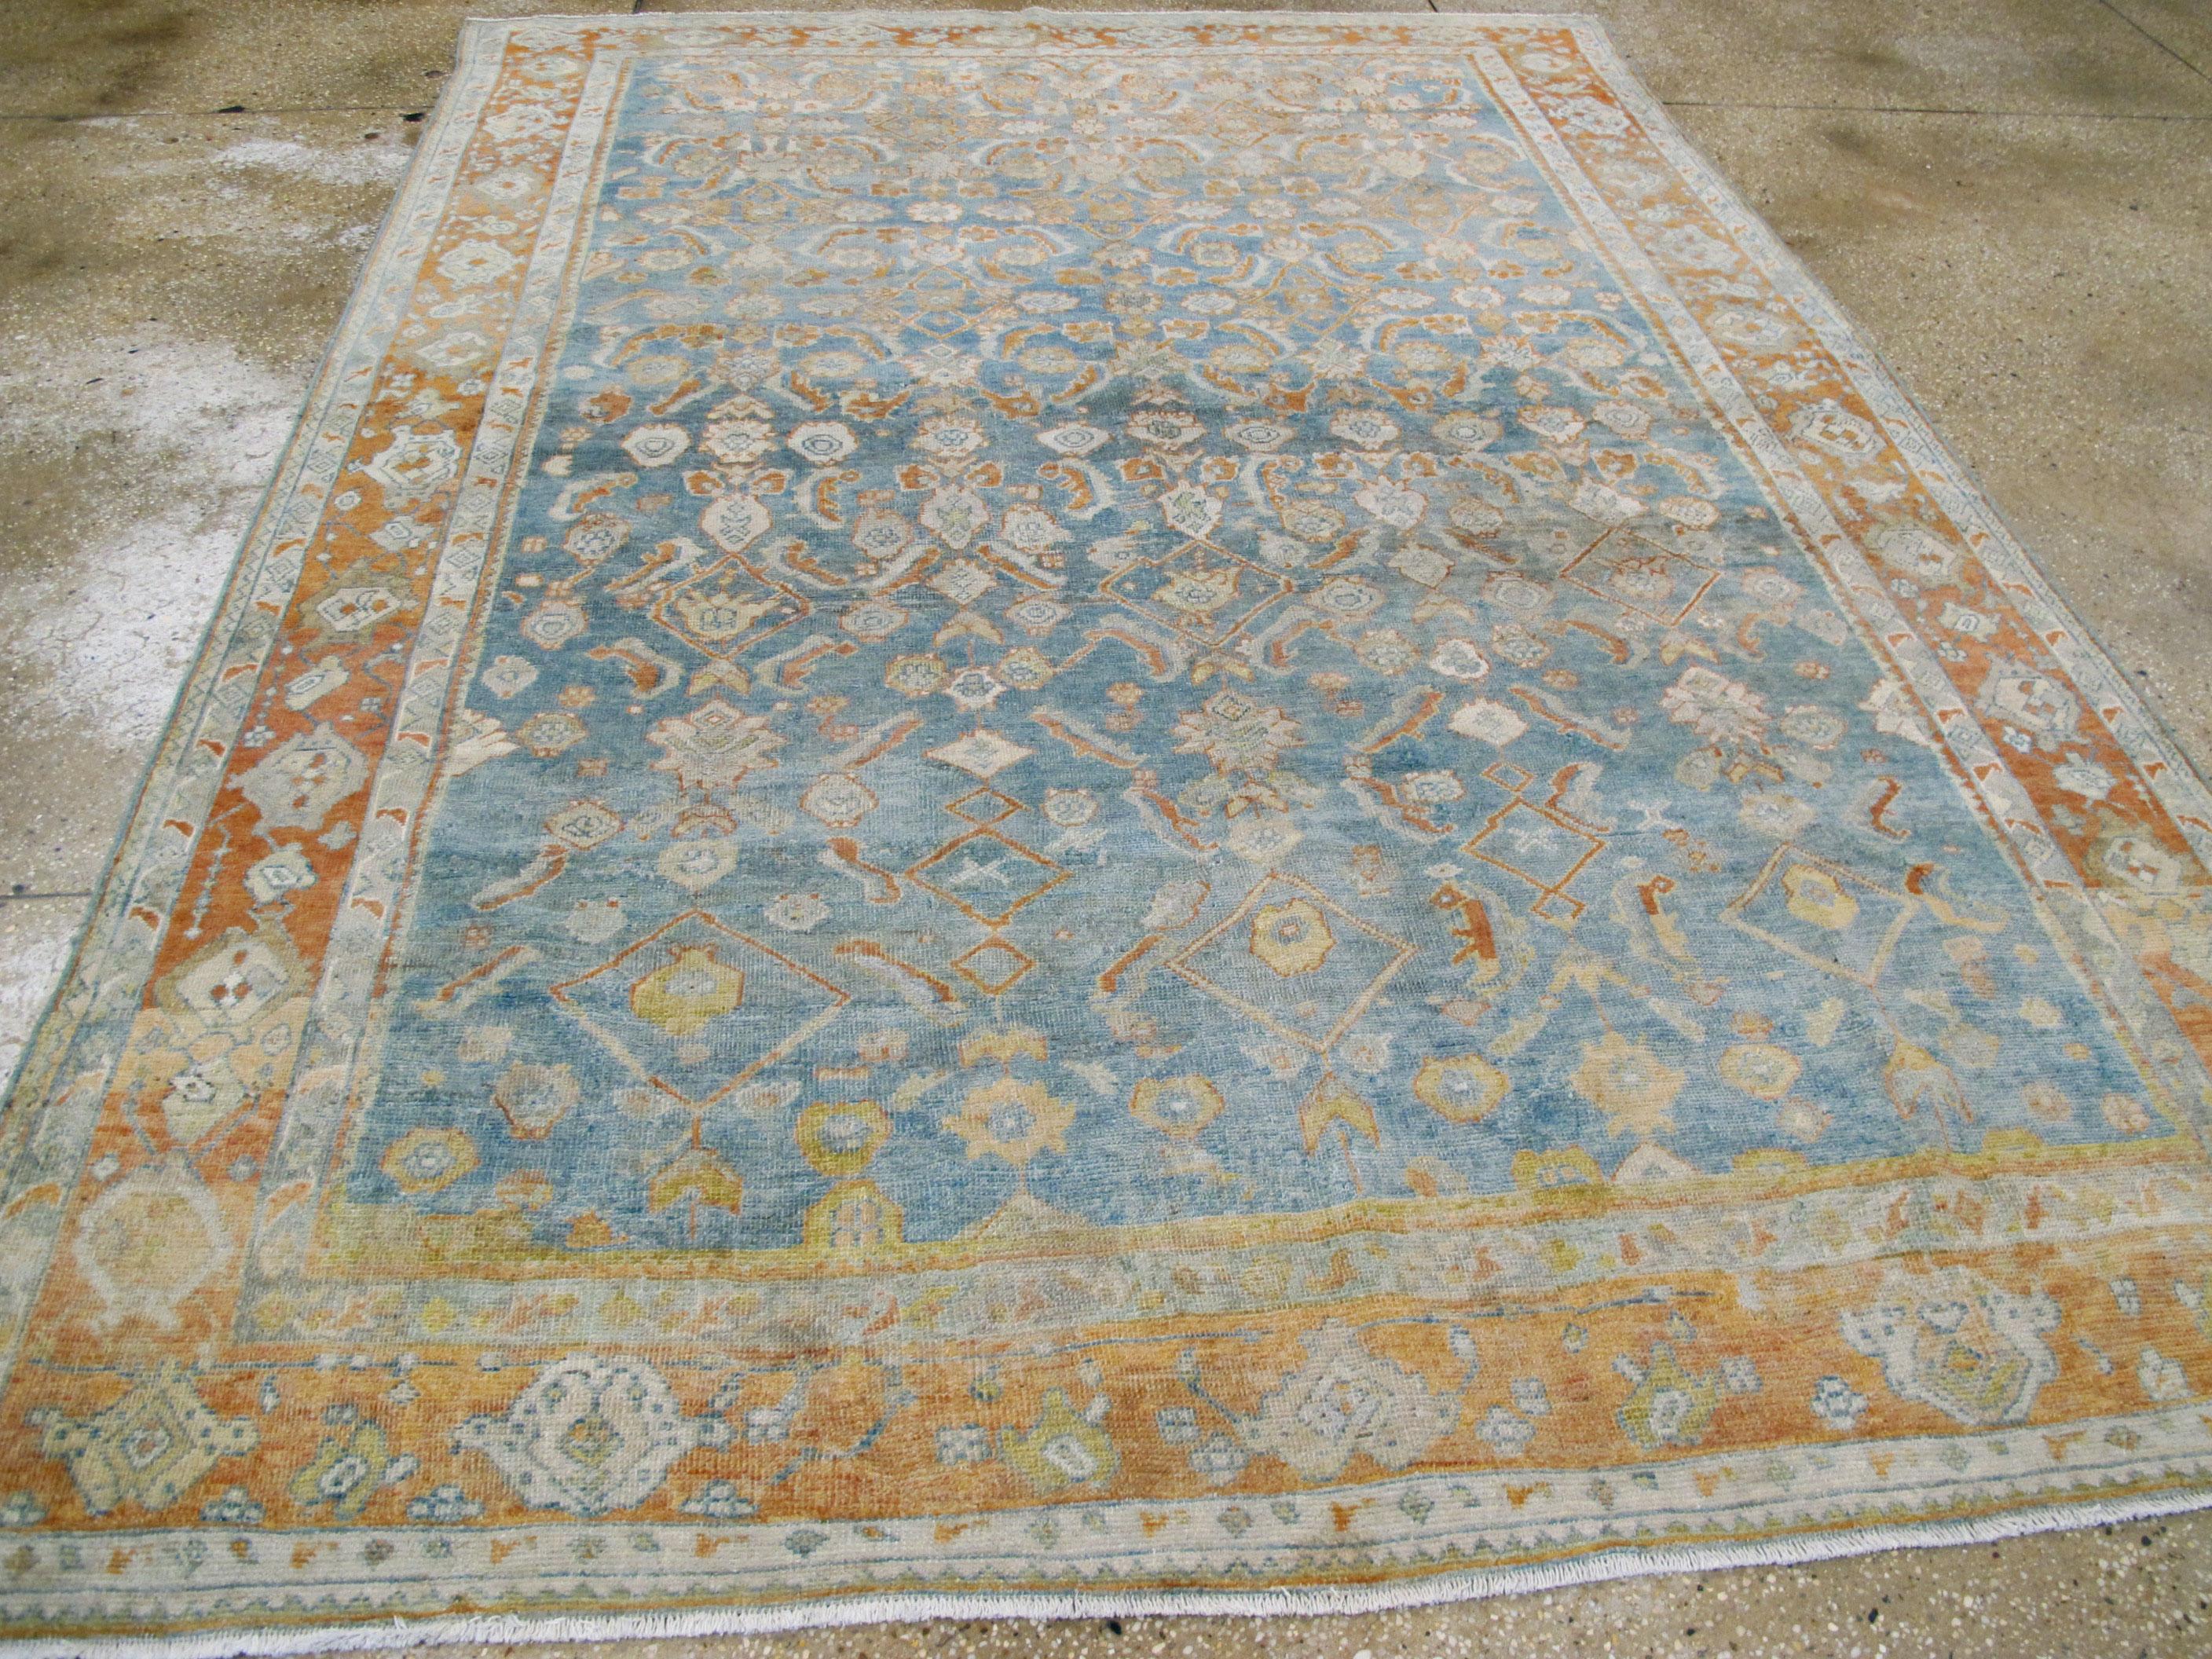 Antique Persian Mahal Carpet (Handgeknüpft)